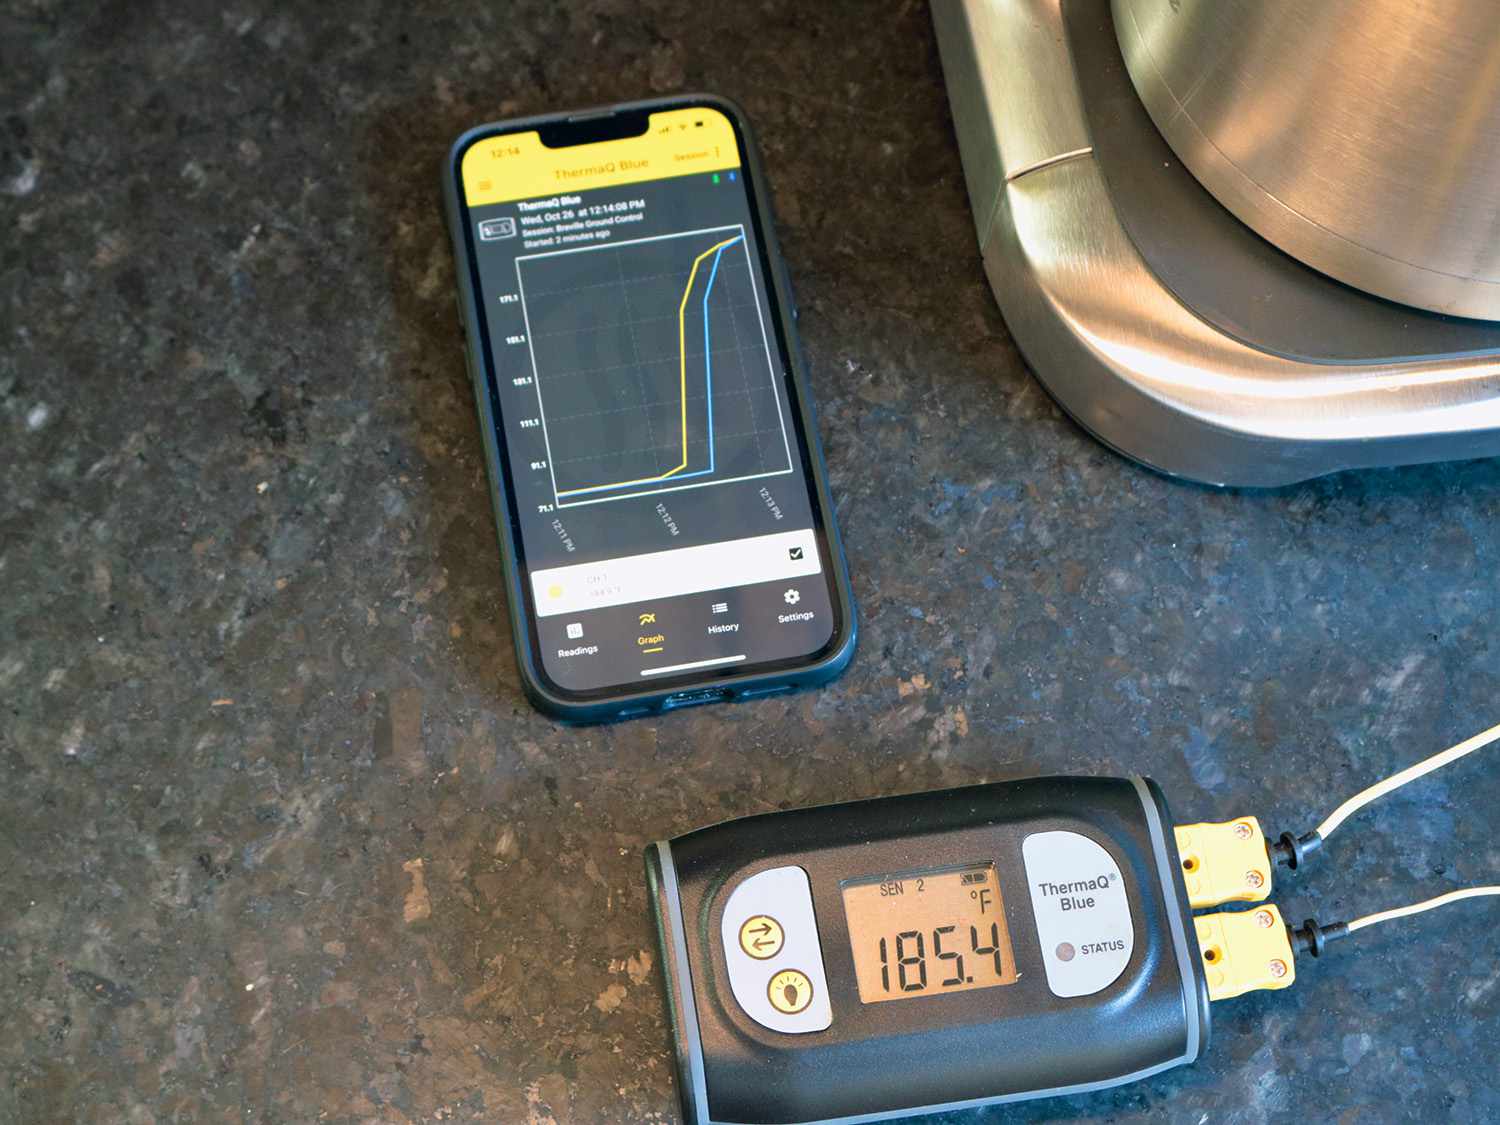 一个热探头显示温度为185ÂºF，旁边是手机上显示温度上升的应用程序